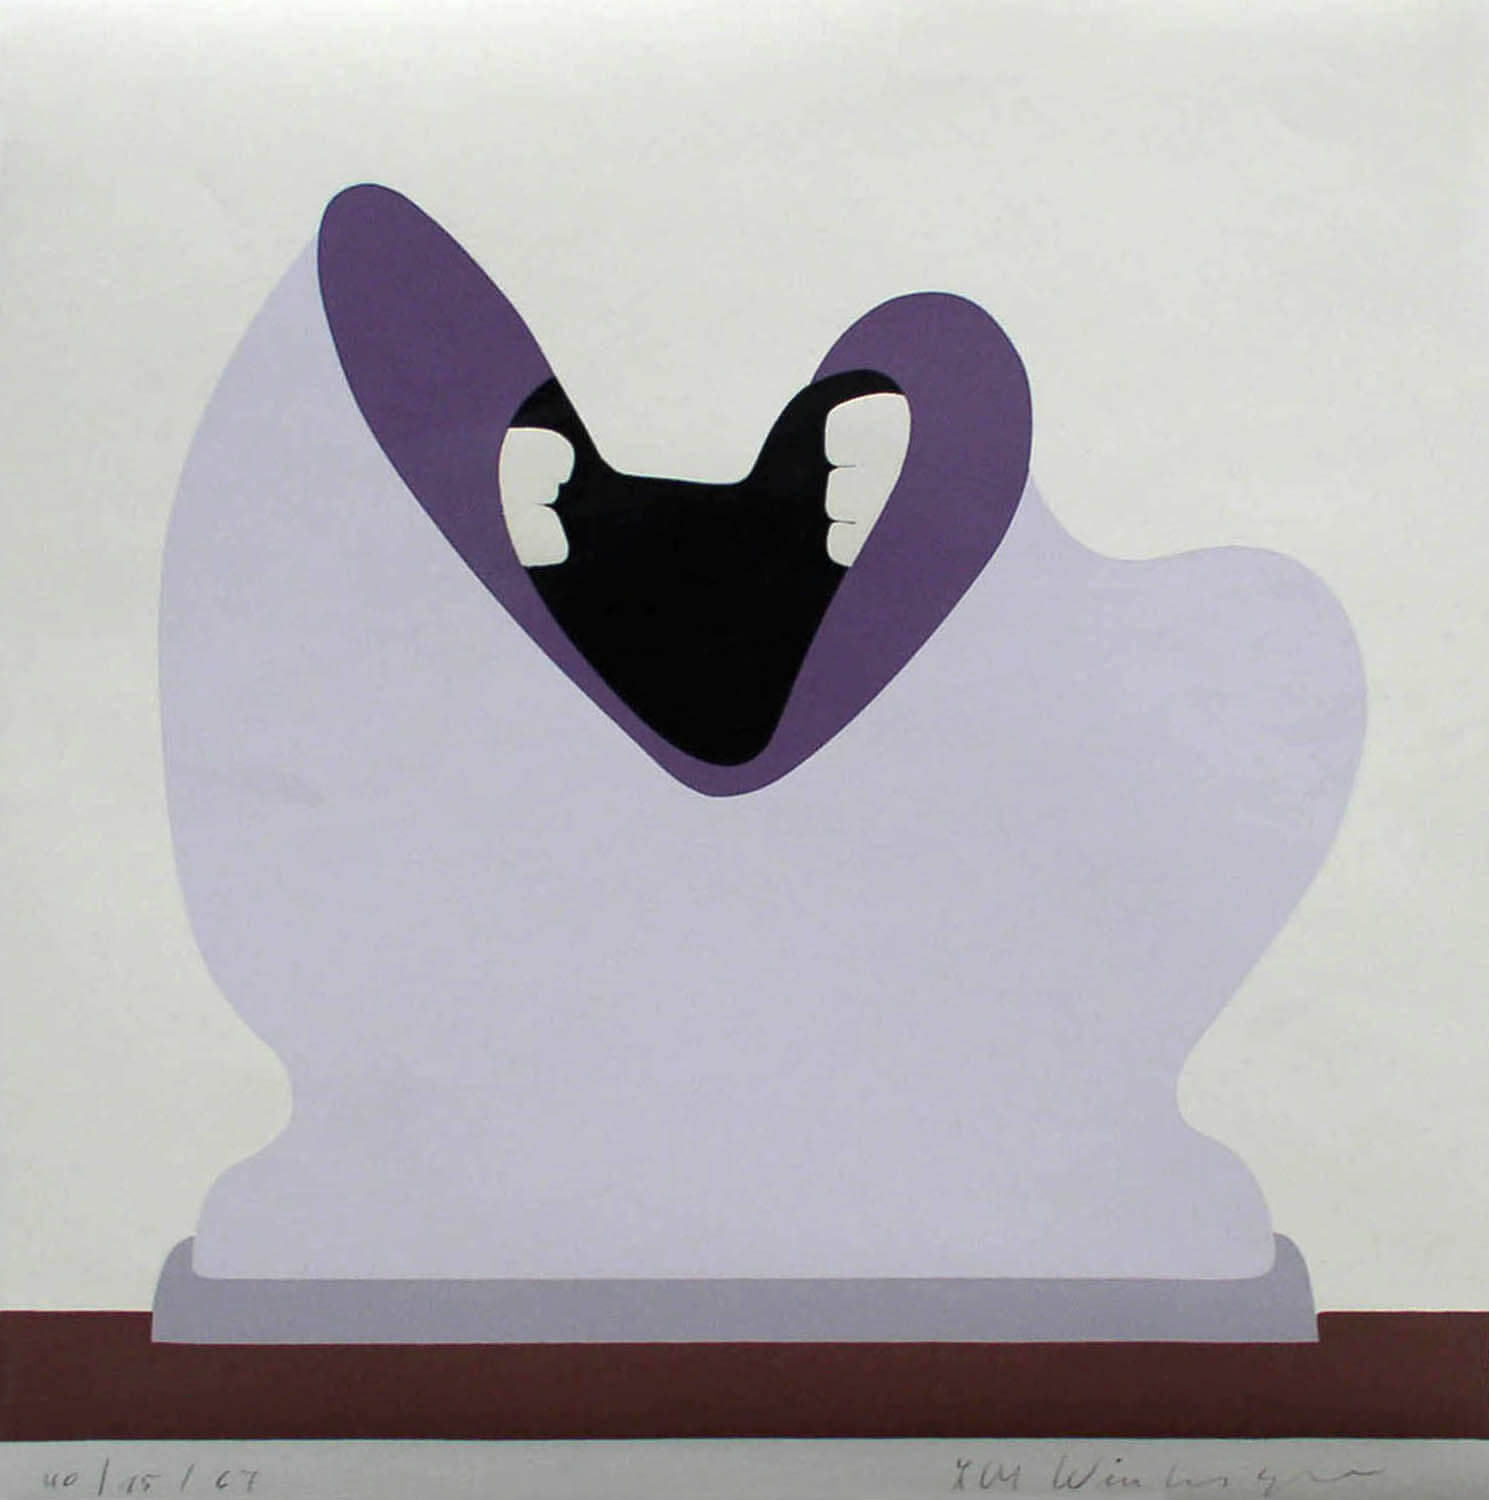 Lambert Maria Wintersberger, o. T. (Kopf, violett), 1967, Siebdruck, Auflage: 40, 40 x 40 cm